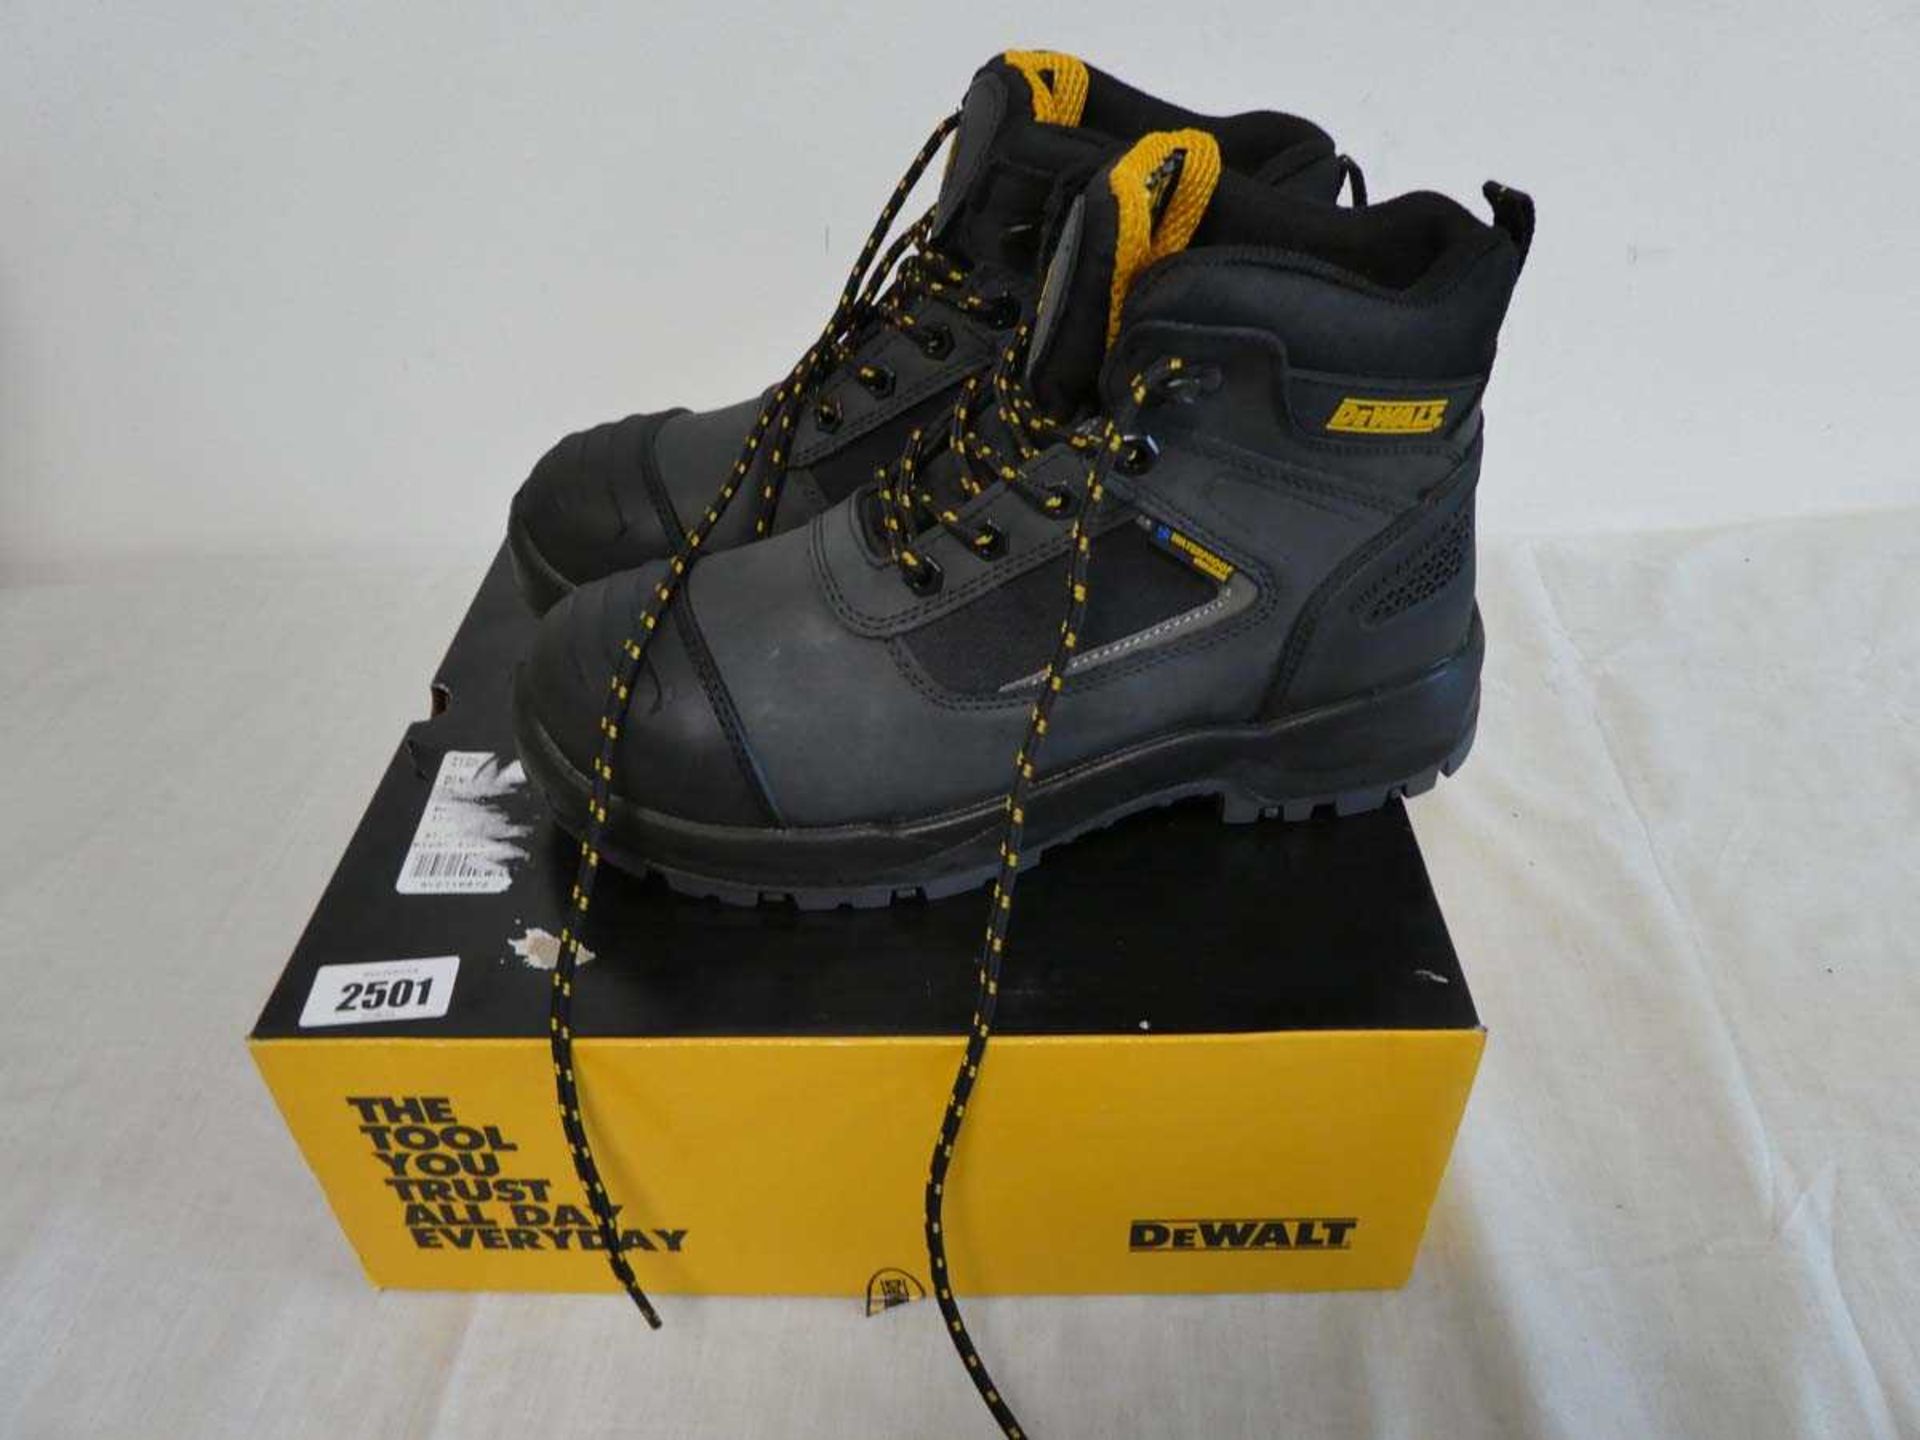 Pair of DeWalt safety work boots (size 8)